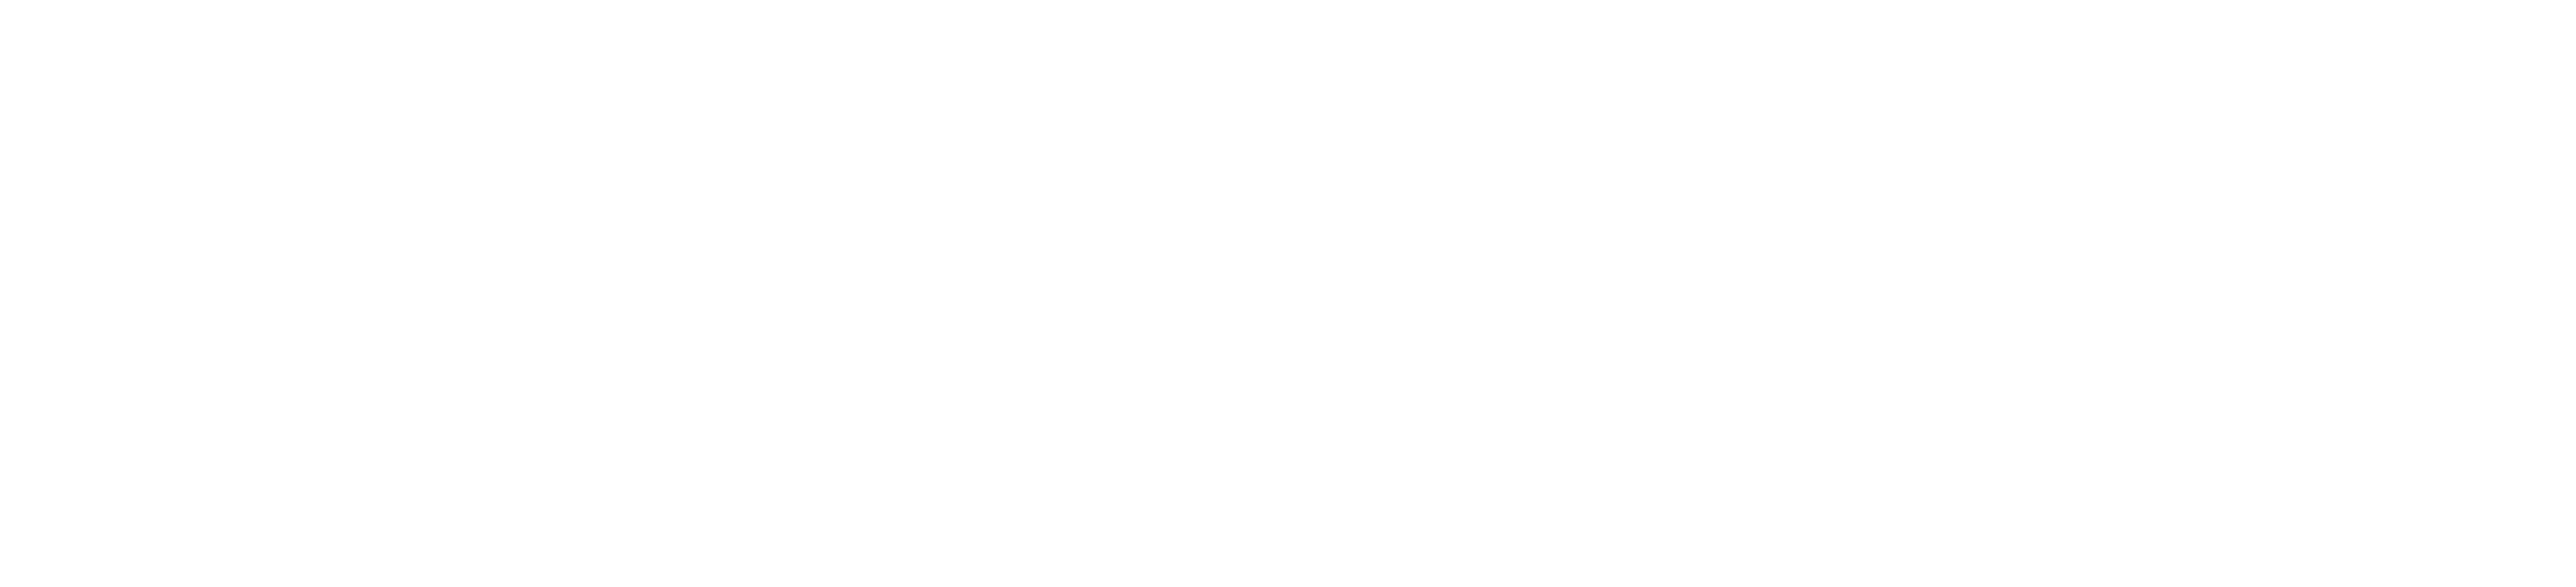 Price & Ramey Logo - Horizontal - White